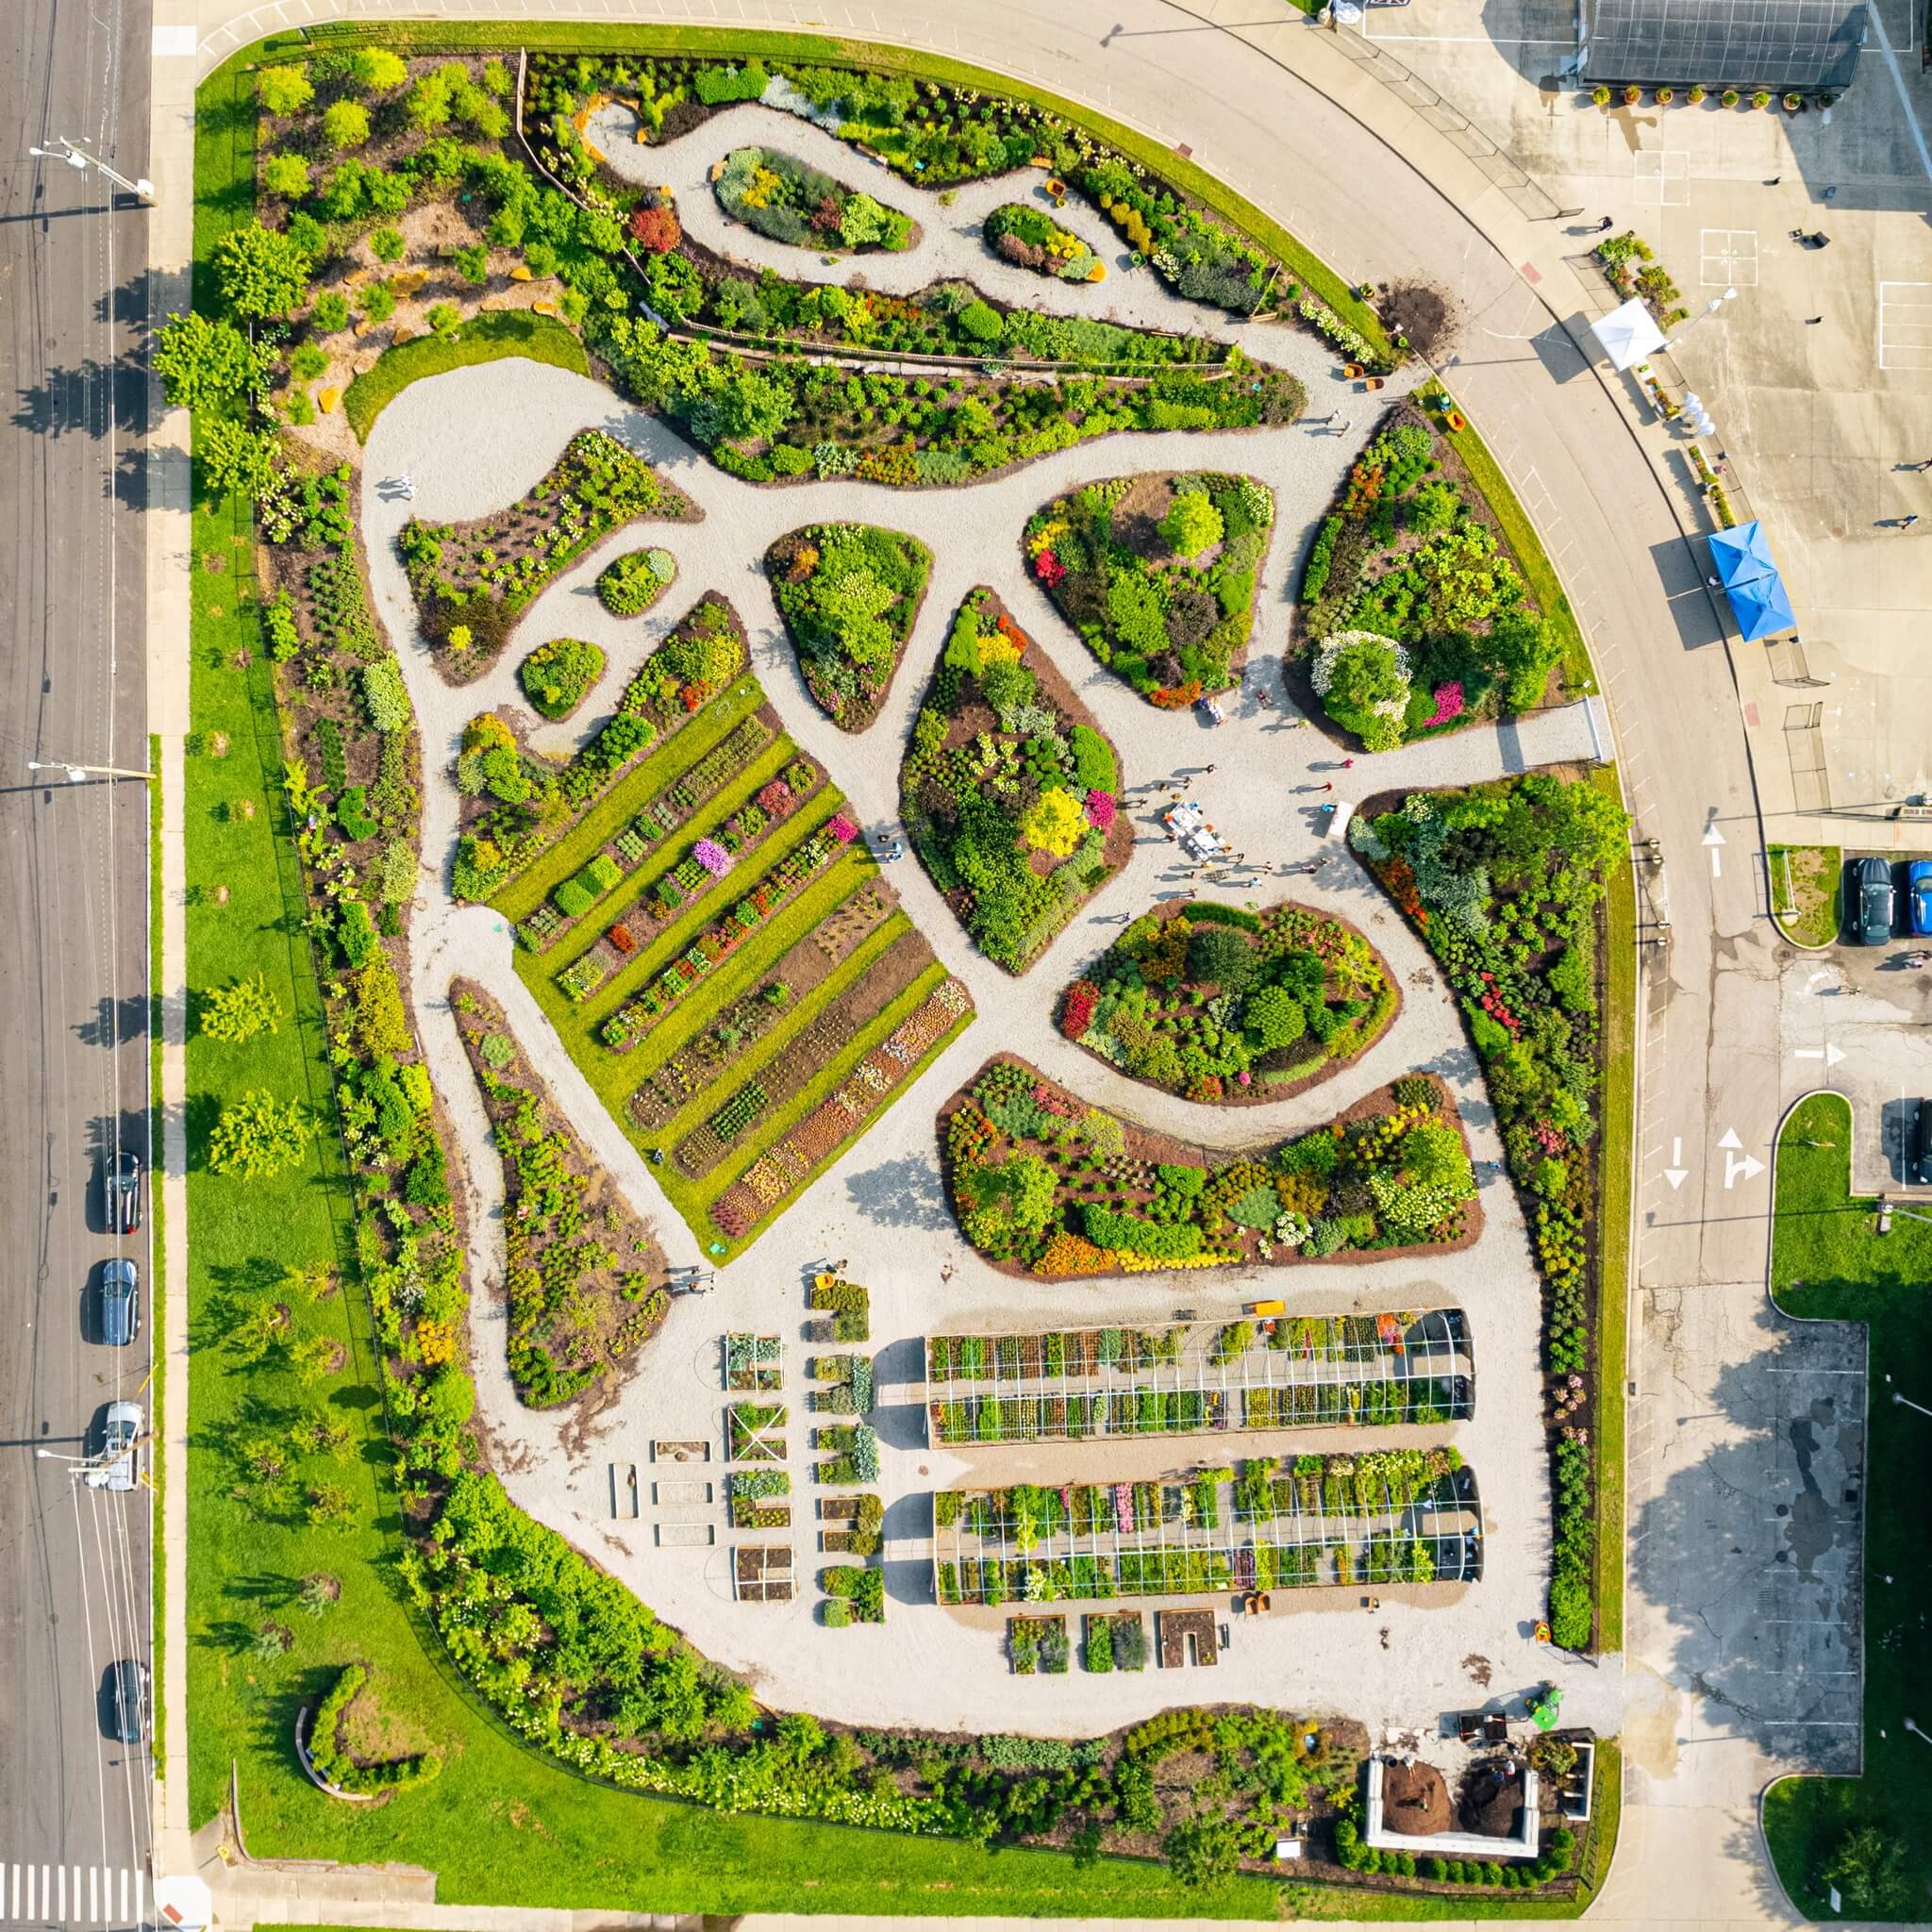 Aerial view of Rockdale garden in Cincinnati